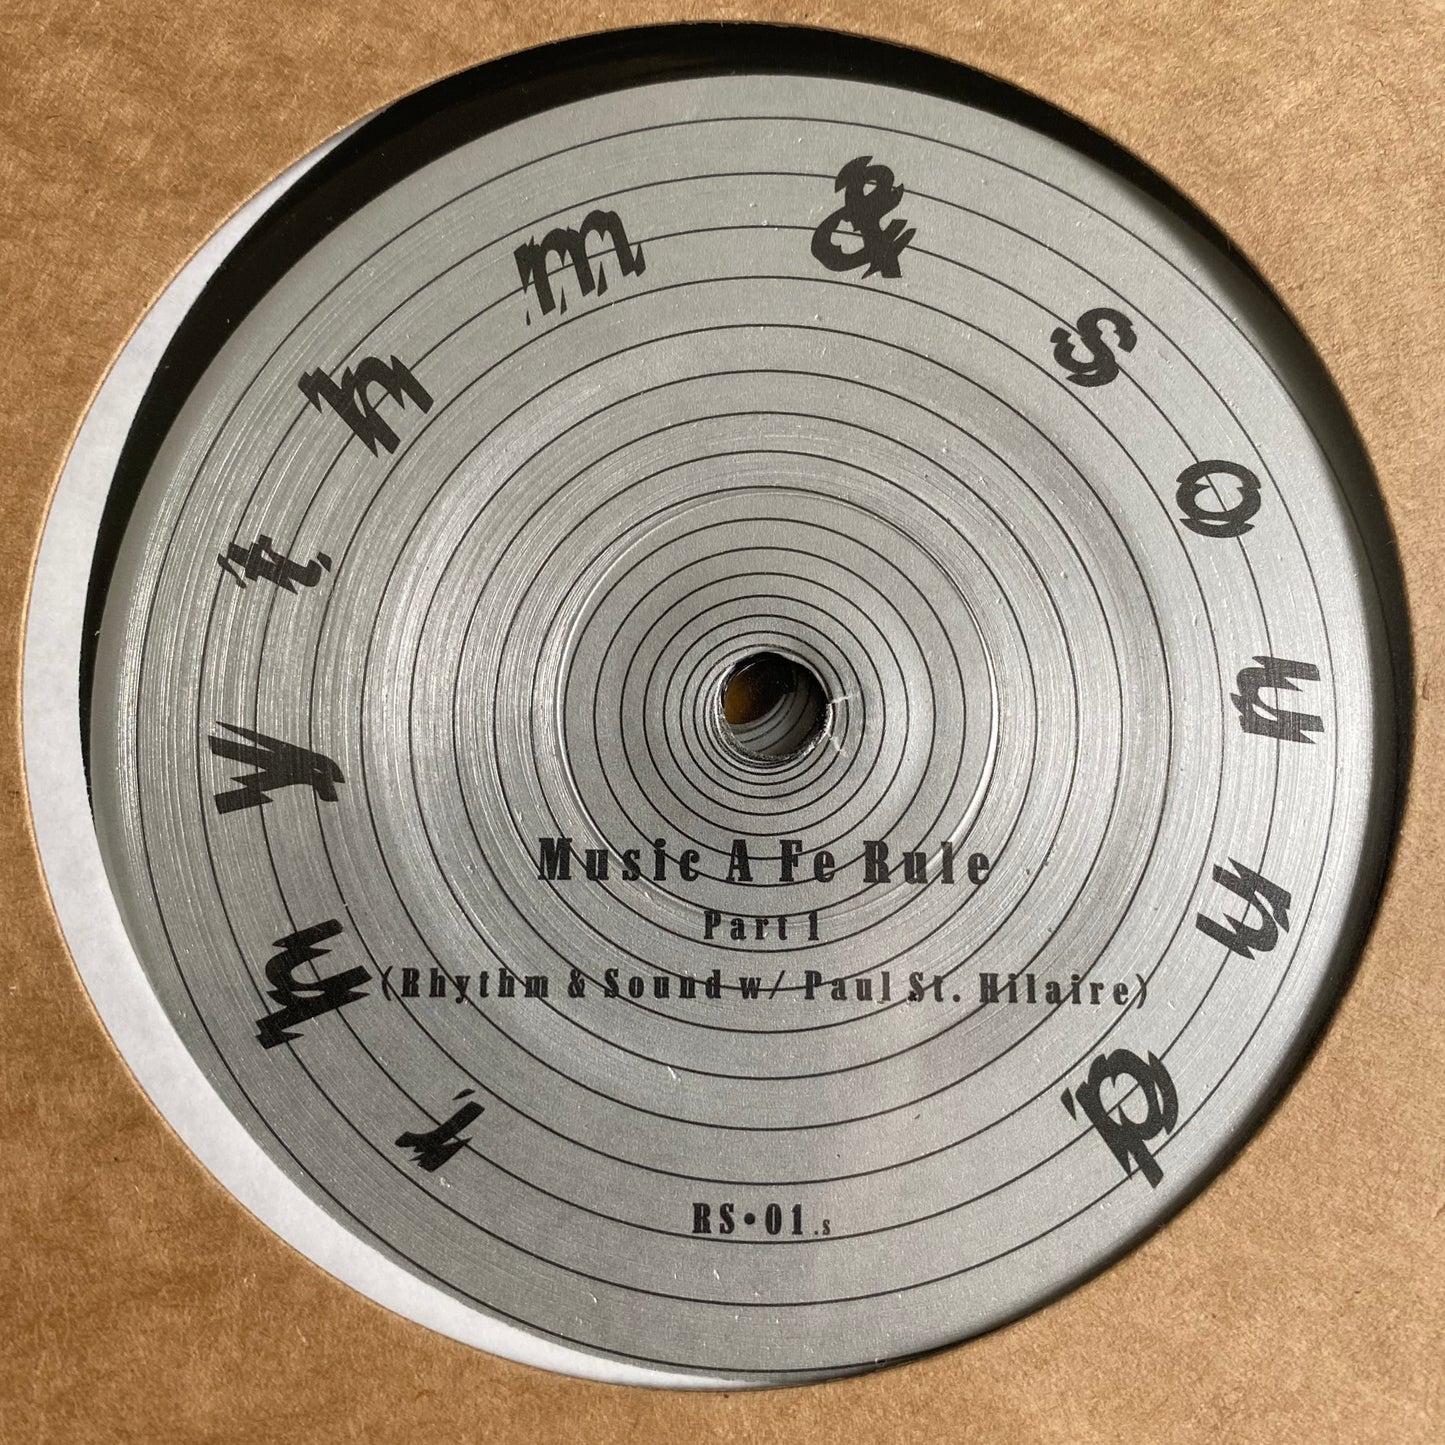 Rhythm & Sound w/ Paul St. Hilaire – Music A Fe Rule